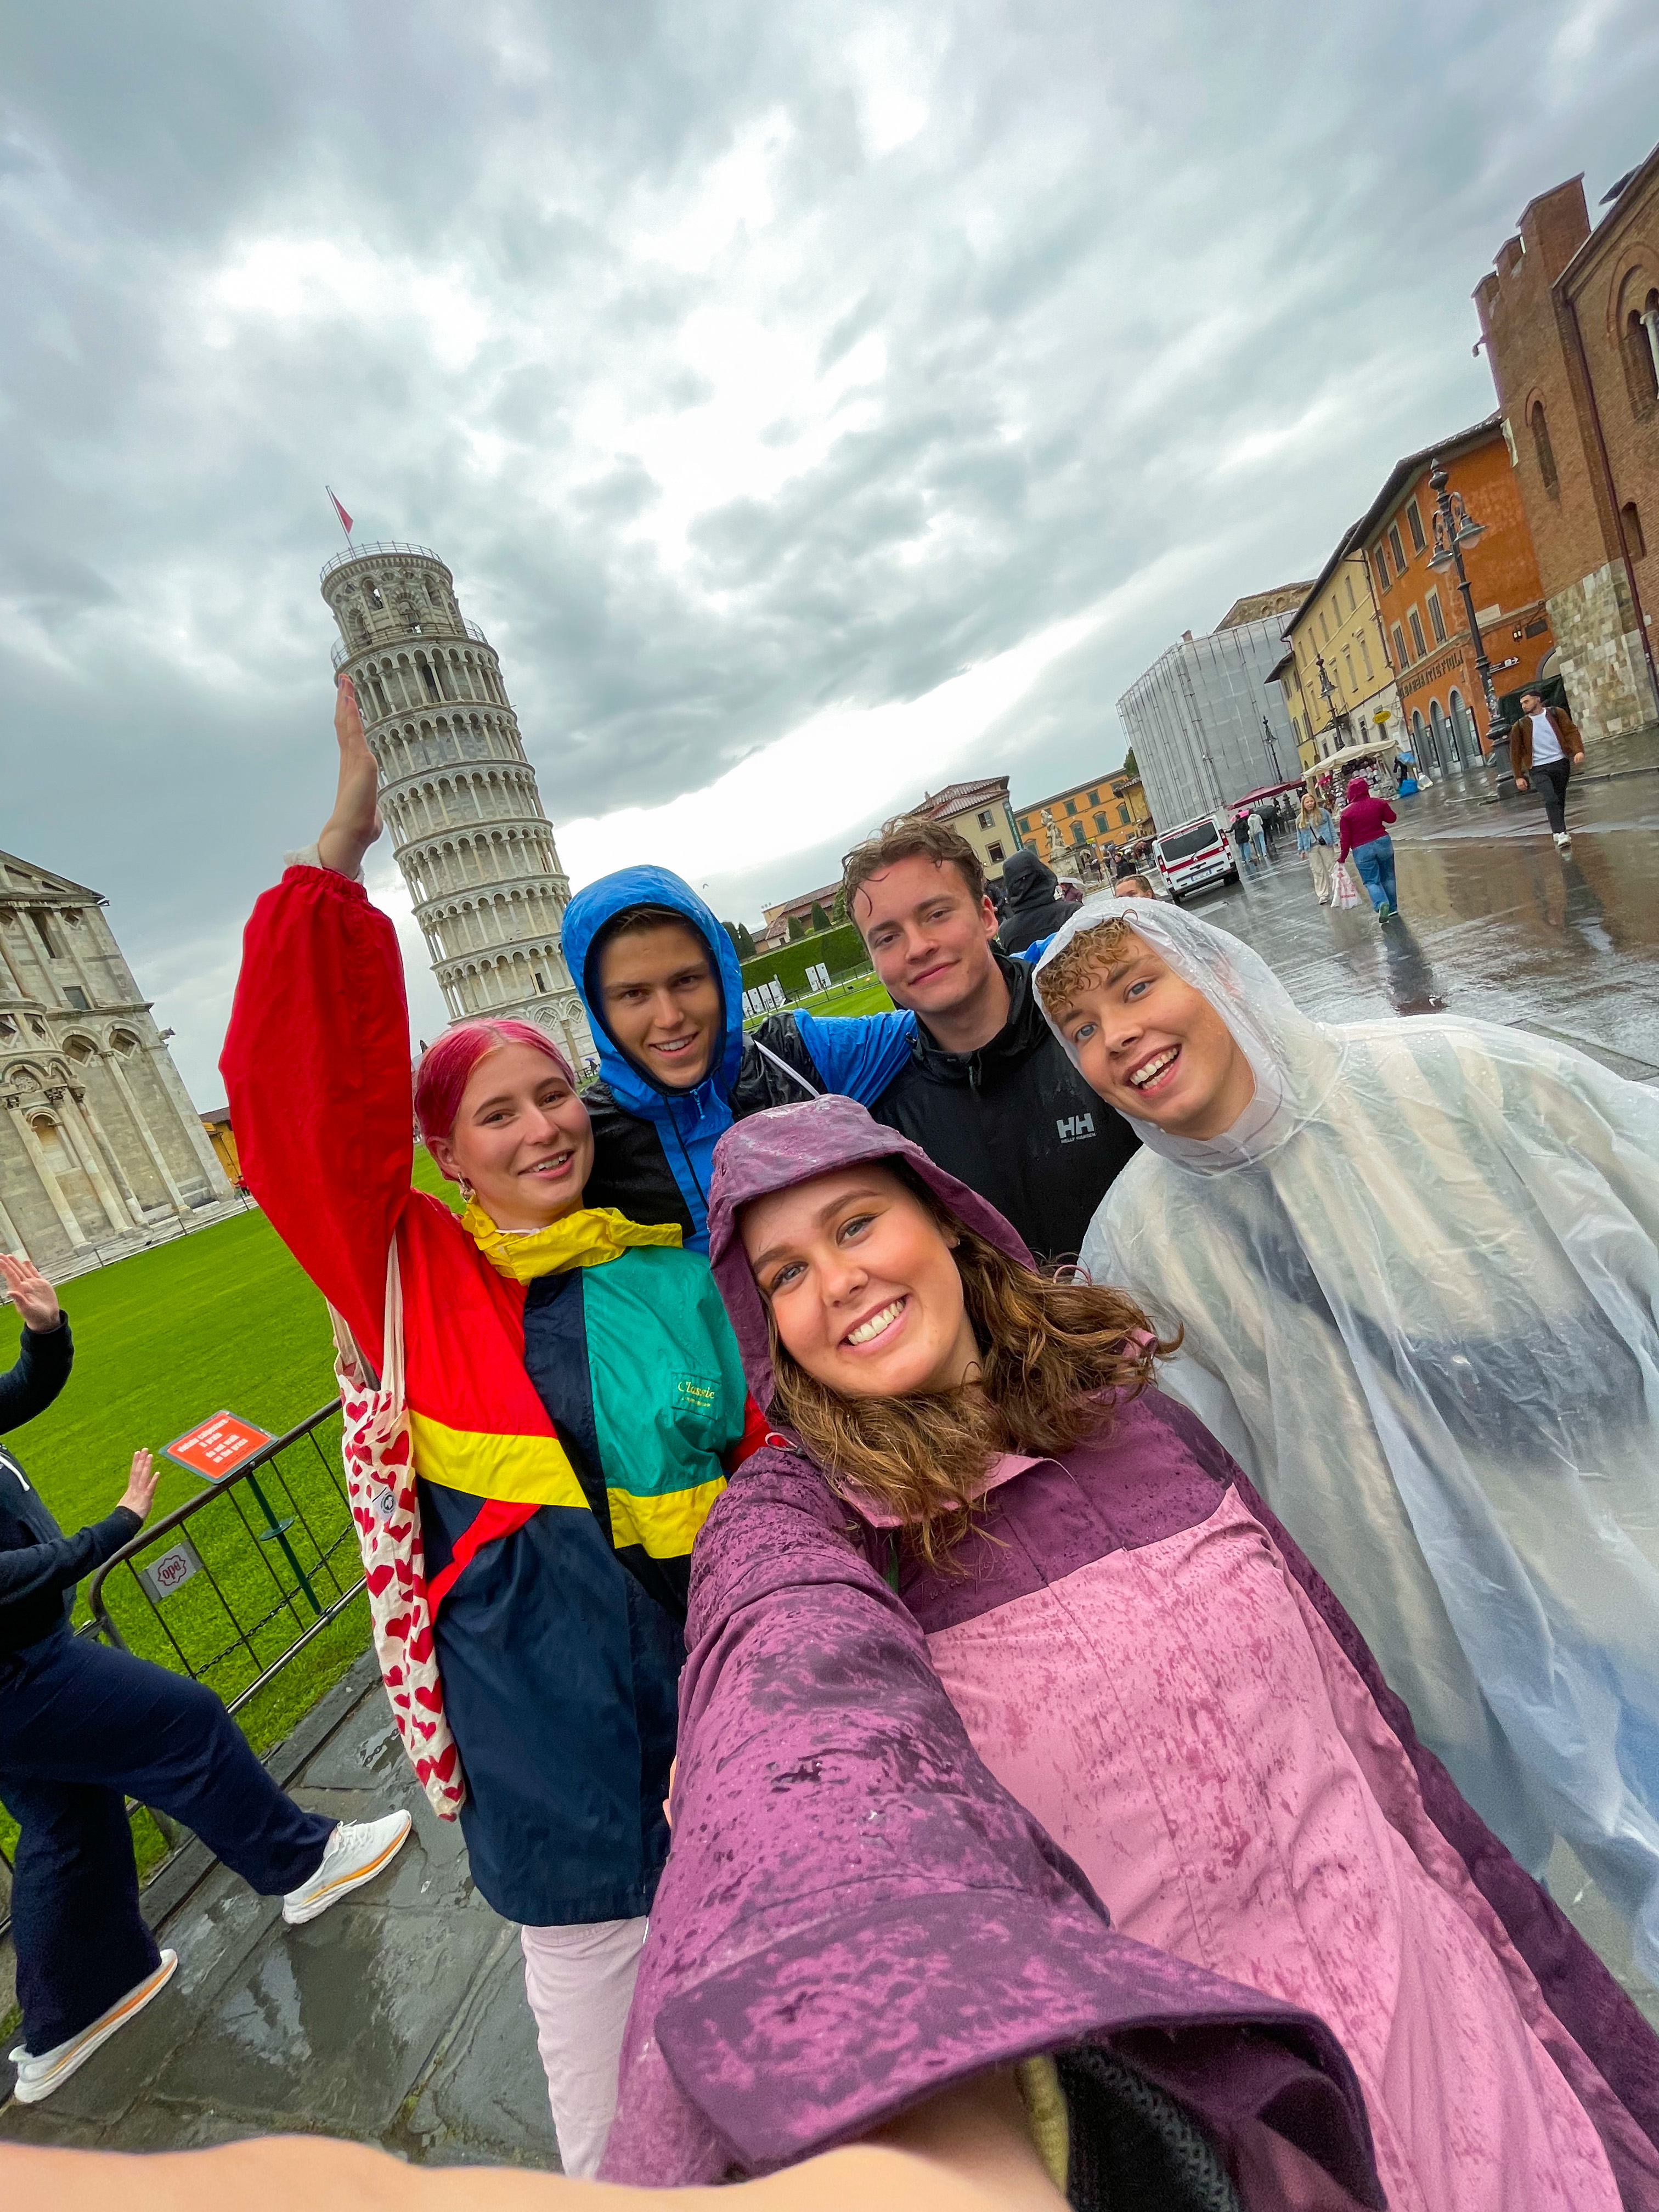 En gruppe unge mennesker i regntøy står foran det skjeve tårnet i Pisa